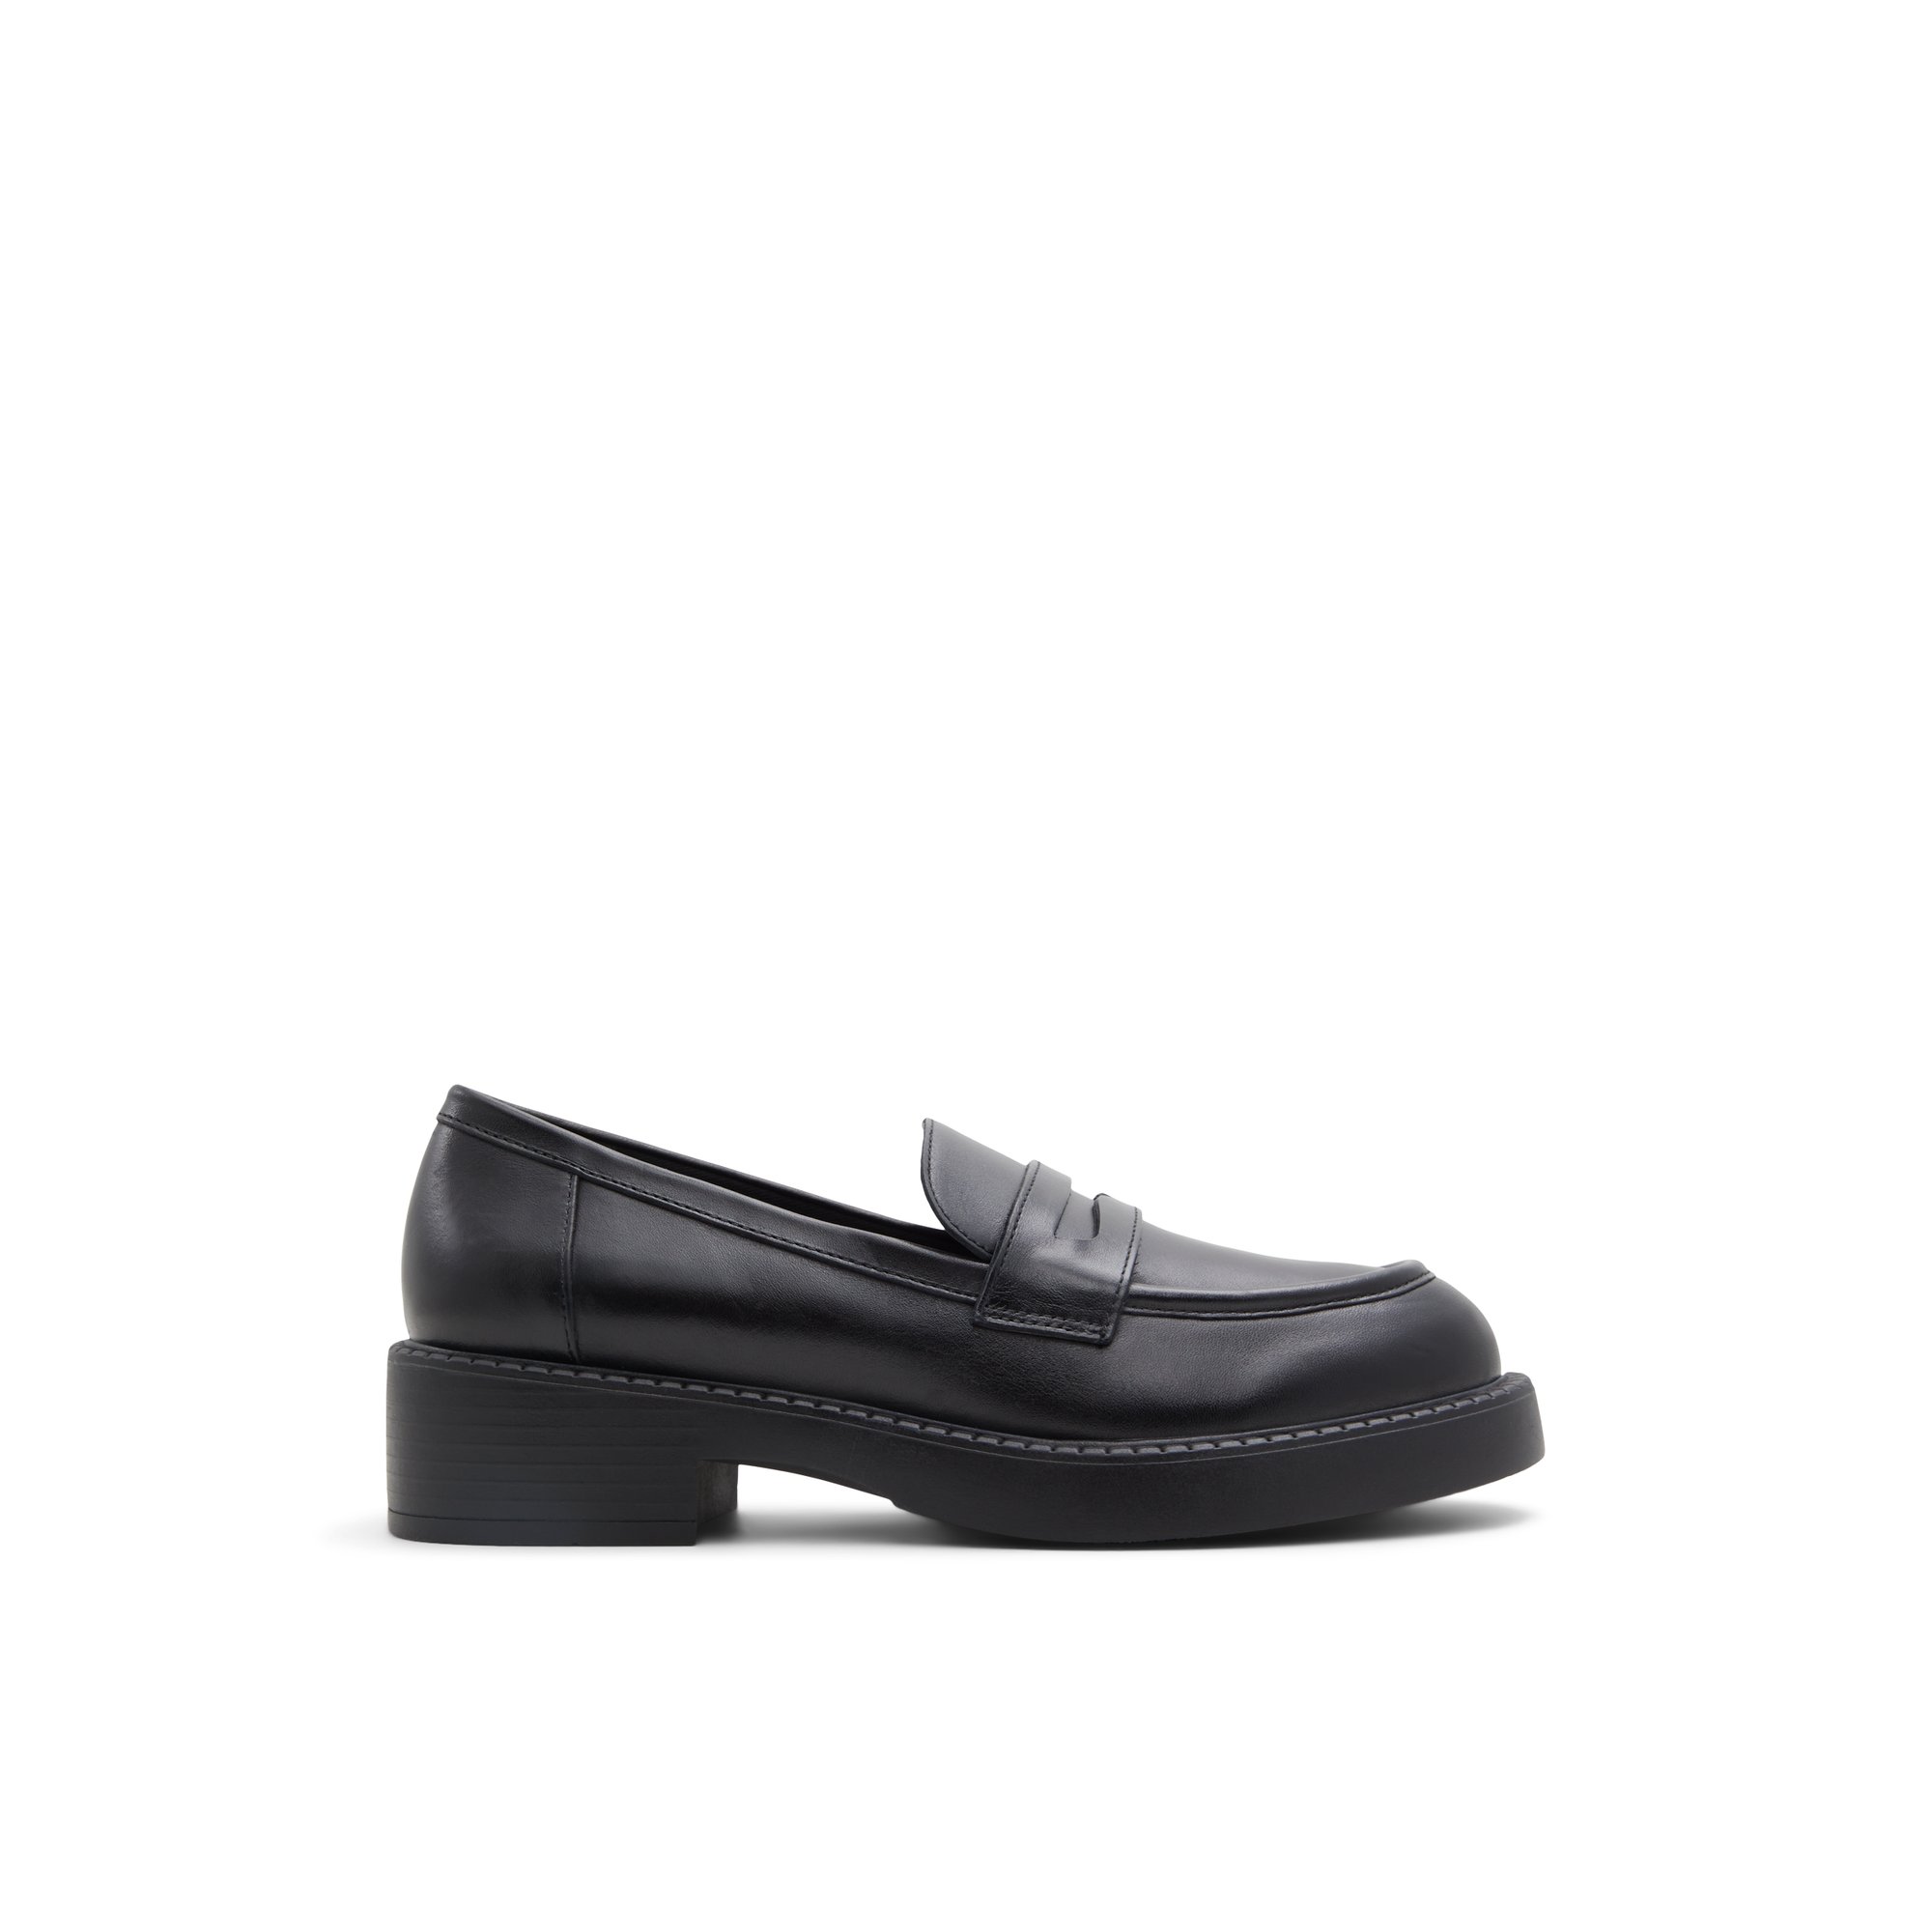 ALDO Bigplan - Women's Loafers - Black